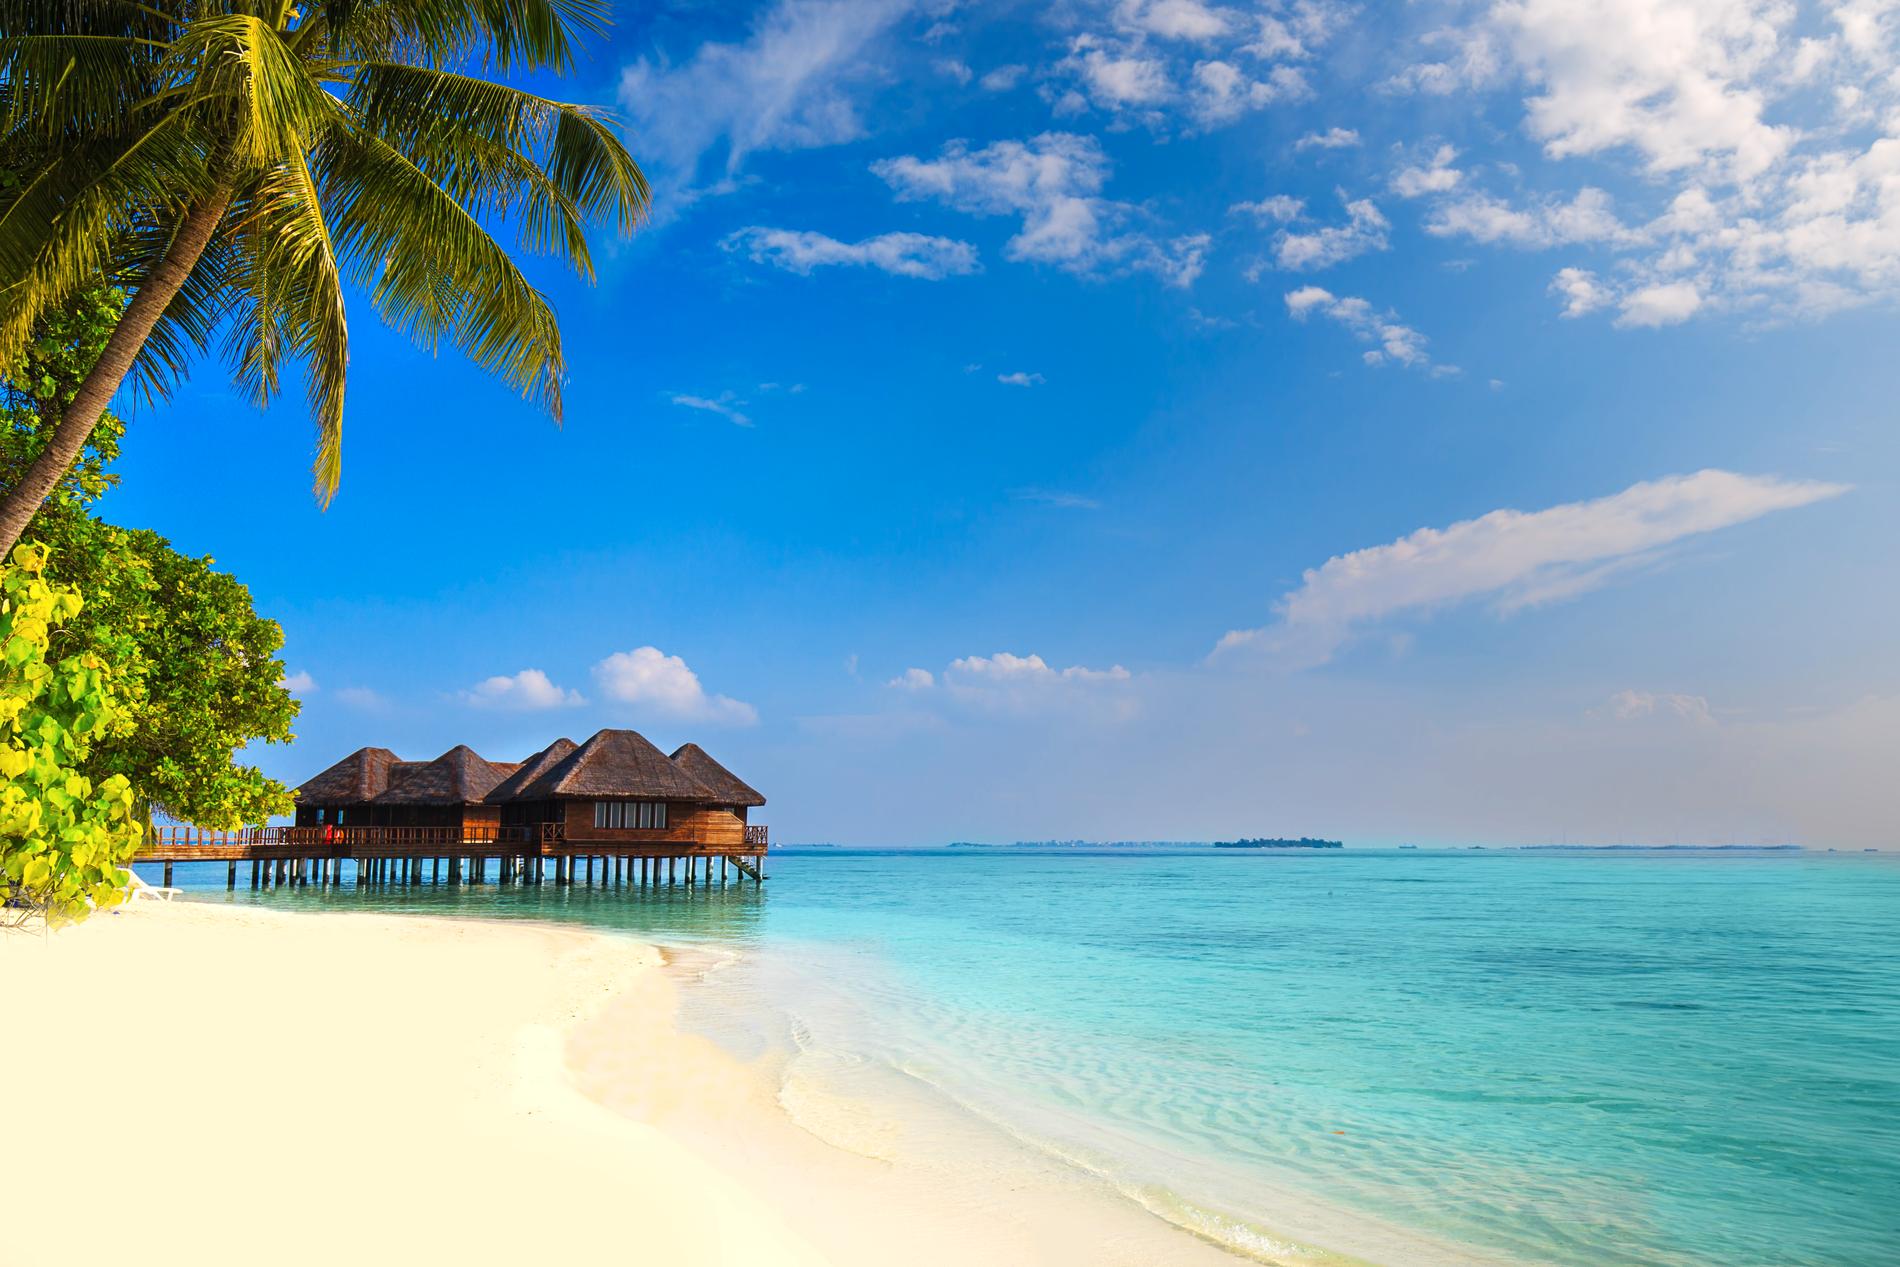 Turister åker till idylliska öar, medan många av de maldiviska invånarnas verklighet består av korruption och ökad religiös extremism. 